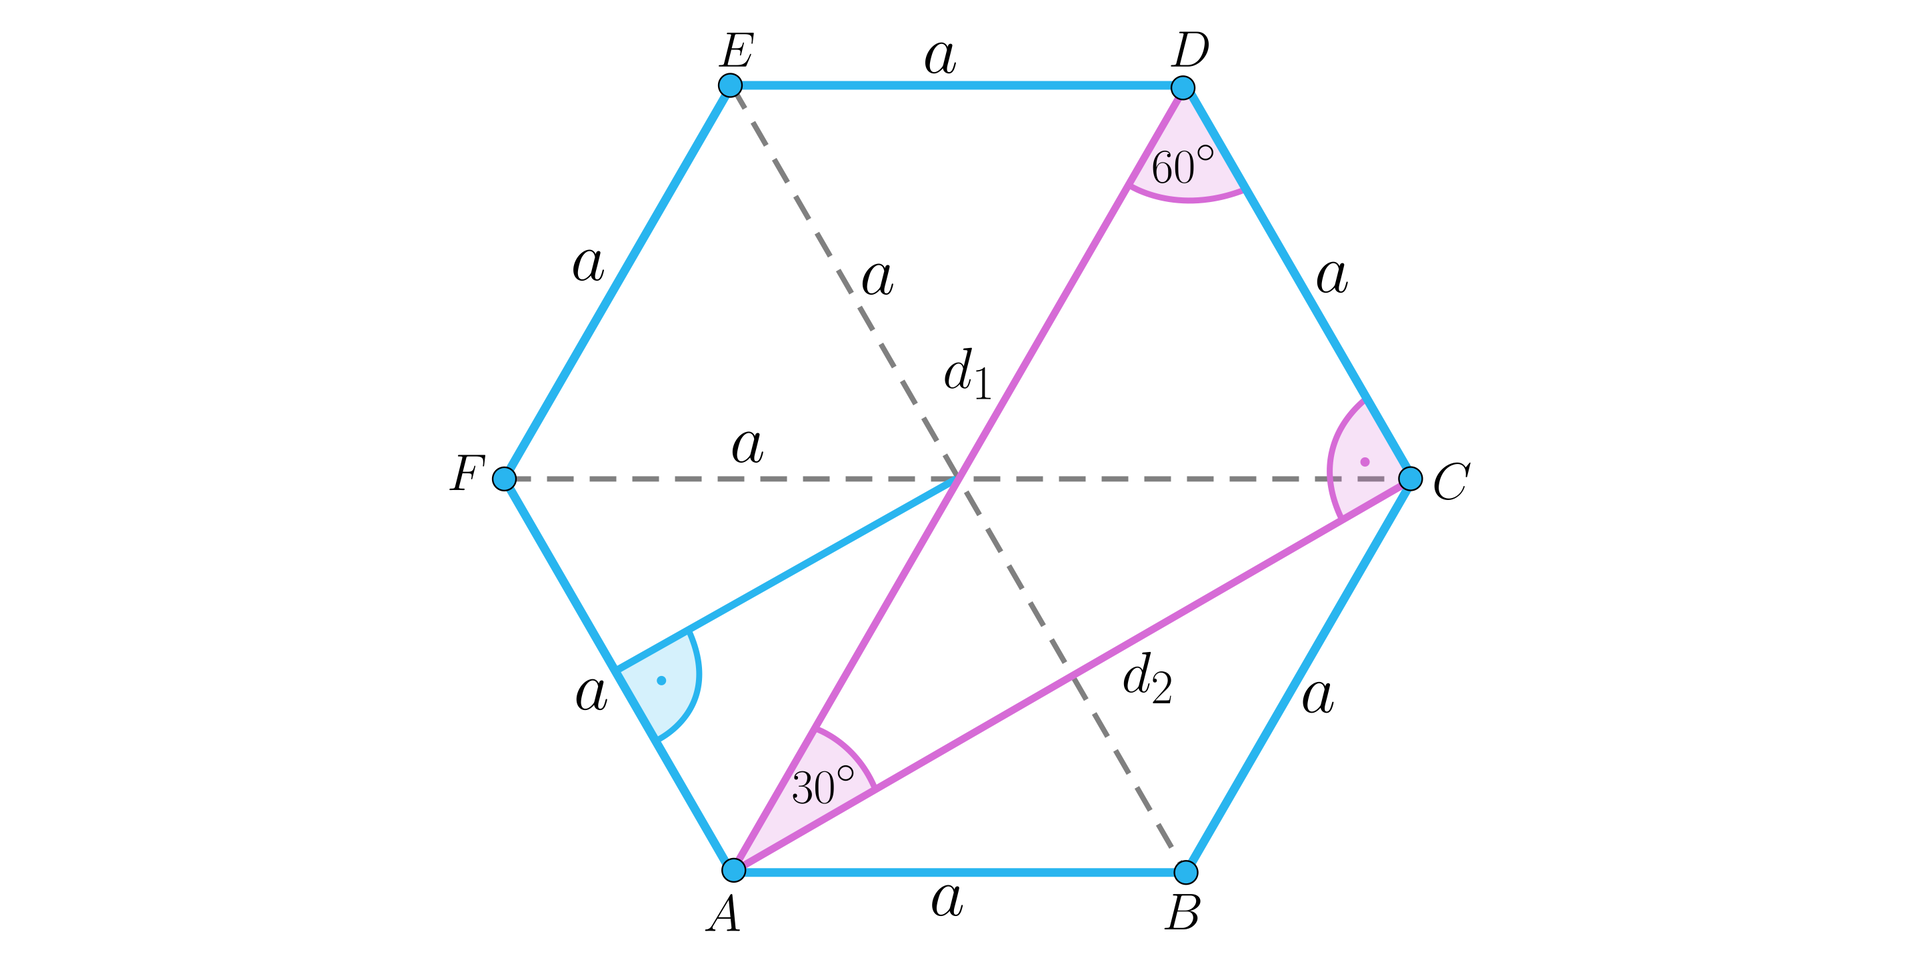 Na ilustracji przedstawiono sześciokąt foremny ABCDEF, o boku długości a, oraz środku w punkcie O. Zaznaczono trzy przekątne dłuższe, oznaczone d1, oraz sześć przekątnych krótszych, oznaczonych d2. Przekątne dłuższe to  A D przecinek B E przecinek C F. Do przekątnych krótszych należą A C przecinek, A E przecinek C E przecinek D F przecinek D B przecinek F B.  Zaznaczono trójkąt ACD o przyprostokątnych a, d2, oraz przeciwprostokątnej d1. Kąt ACD=90°, kąt ADC=60°, kąt DAC=30°. Zaznaczono trójkąt równoboczny AFO, oraz wysokość opuszczoną na podstawę AF.